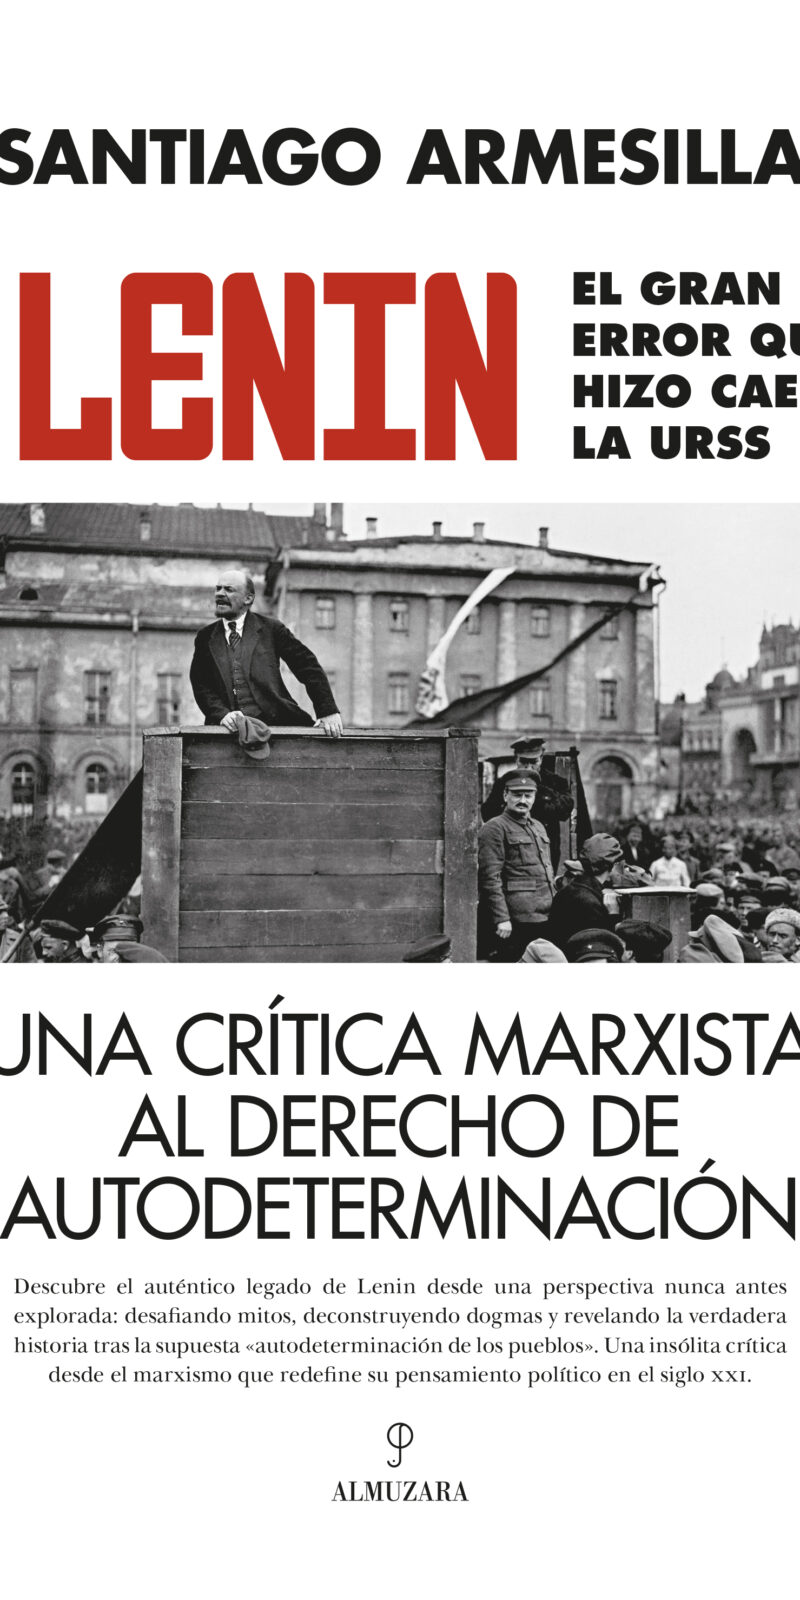 Lenin / S. ARMESILLA / 9788410520059